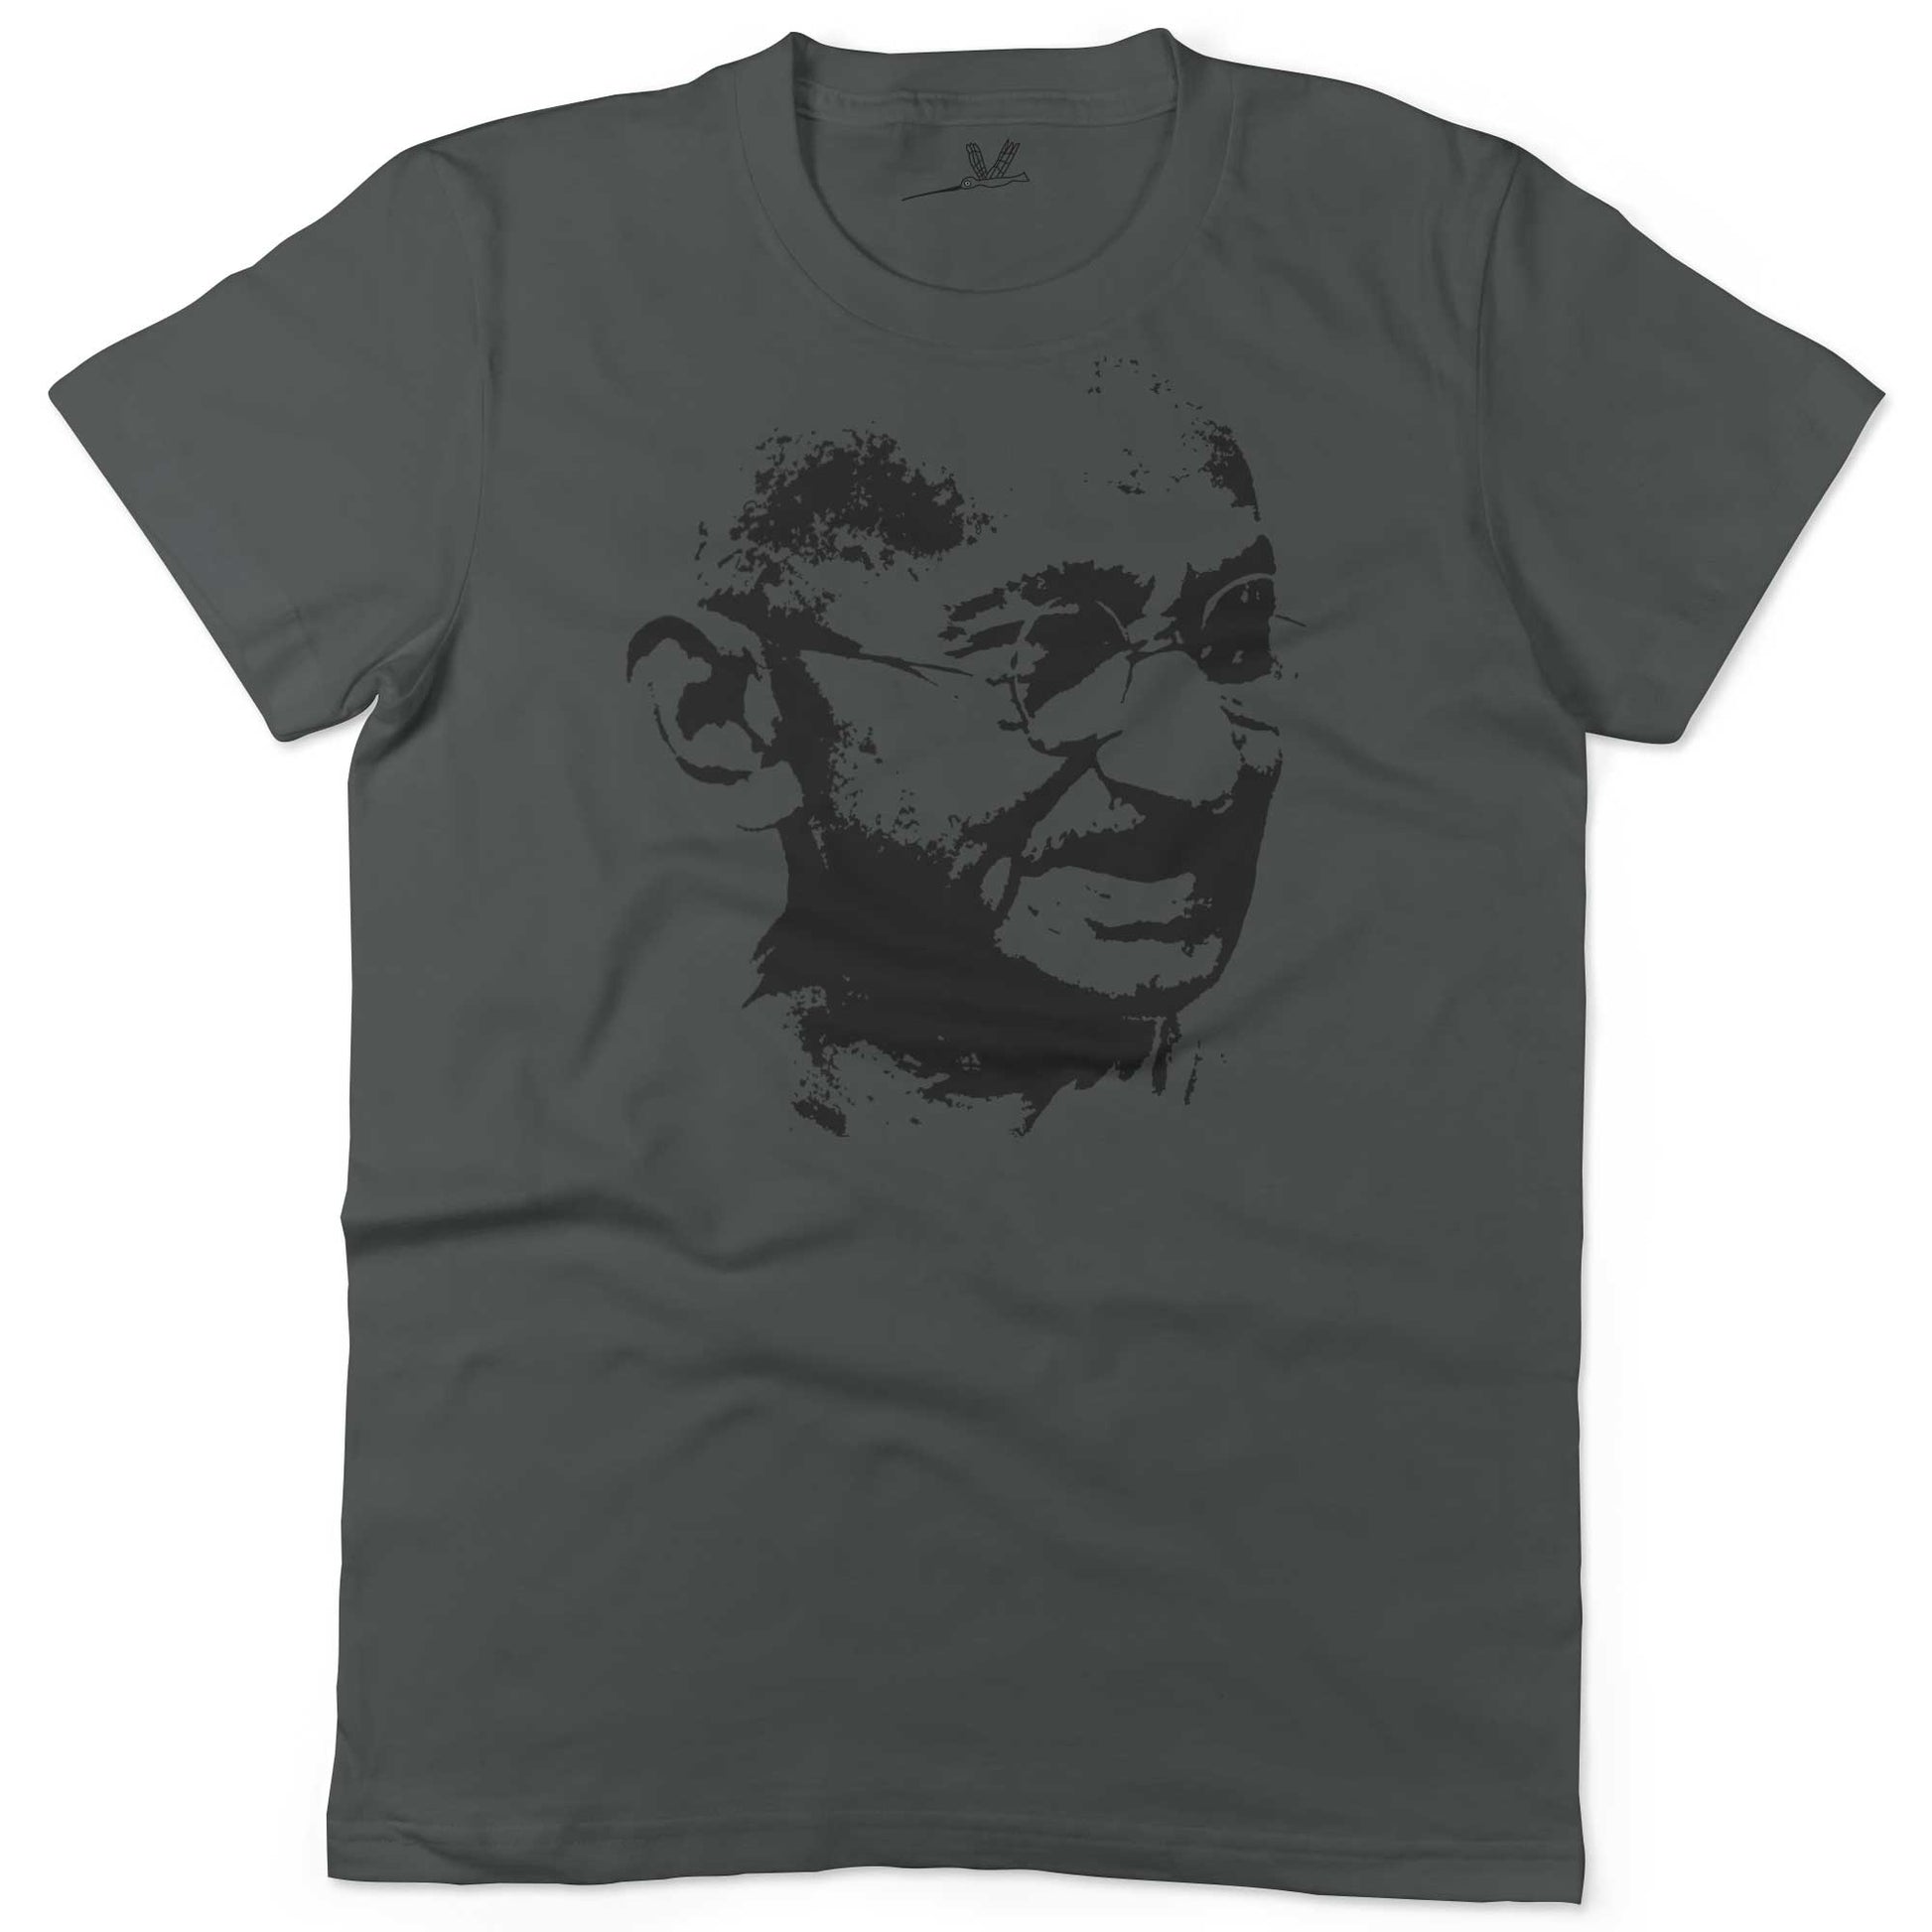 Mahatma Gandhi Be The Change Unisex Or Women's Cotton T-shirt-Asphalt-Woman